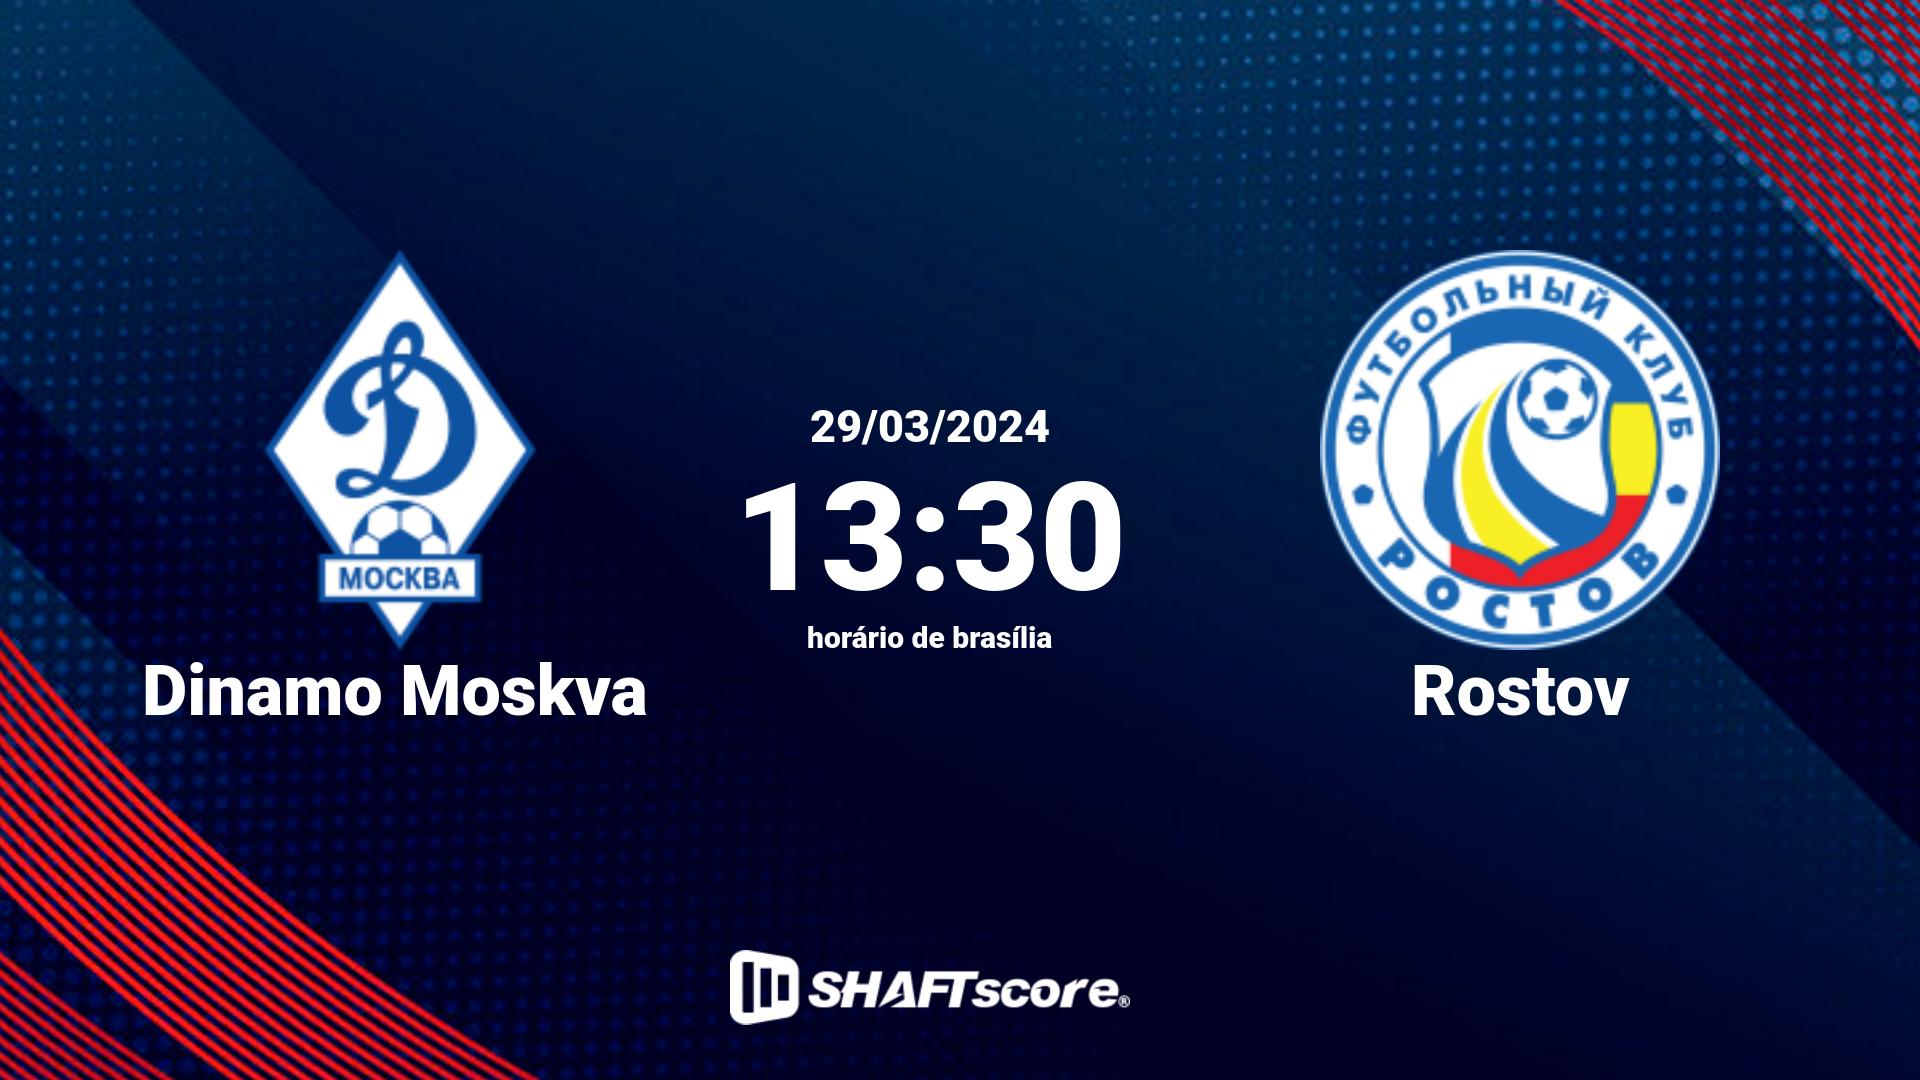 Estatísticas do jogo Dinamo Moskva vs Rostov 29.03 13:30